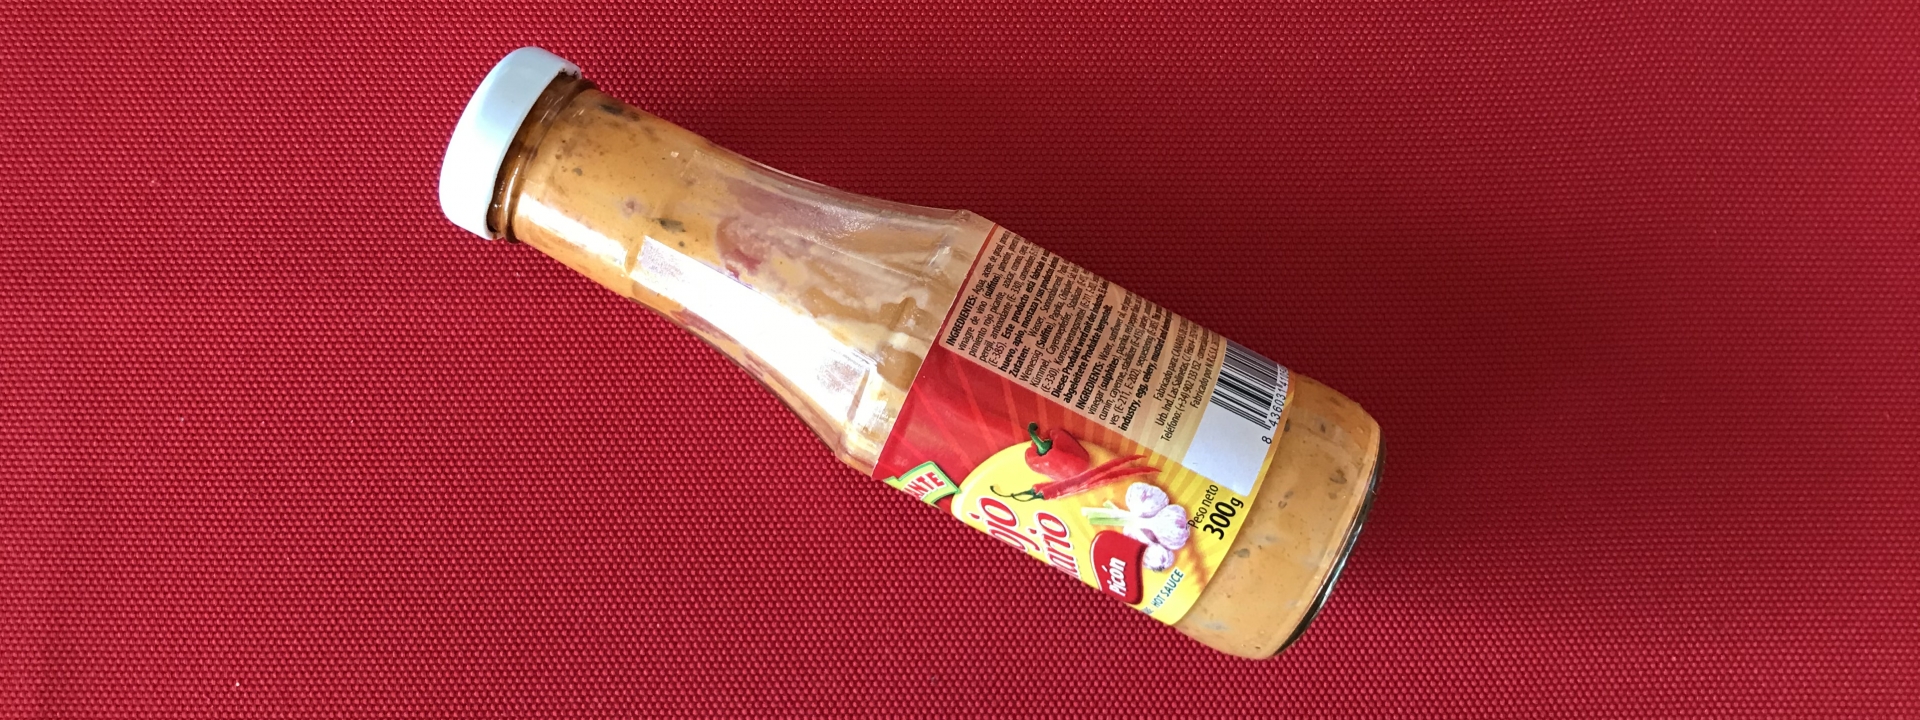 Foto: Eine halbleere Glasflasche mit  einer rosa Sauce darin, auf dem Etikett sind Paprika und Knoblauch zu erkennen